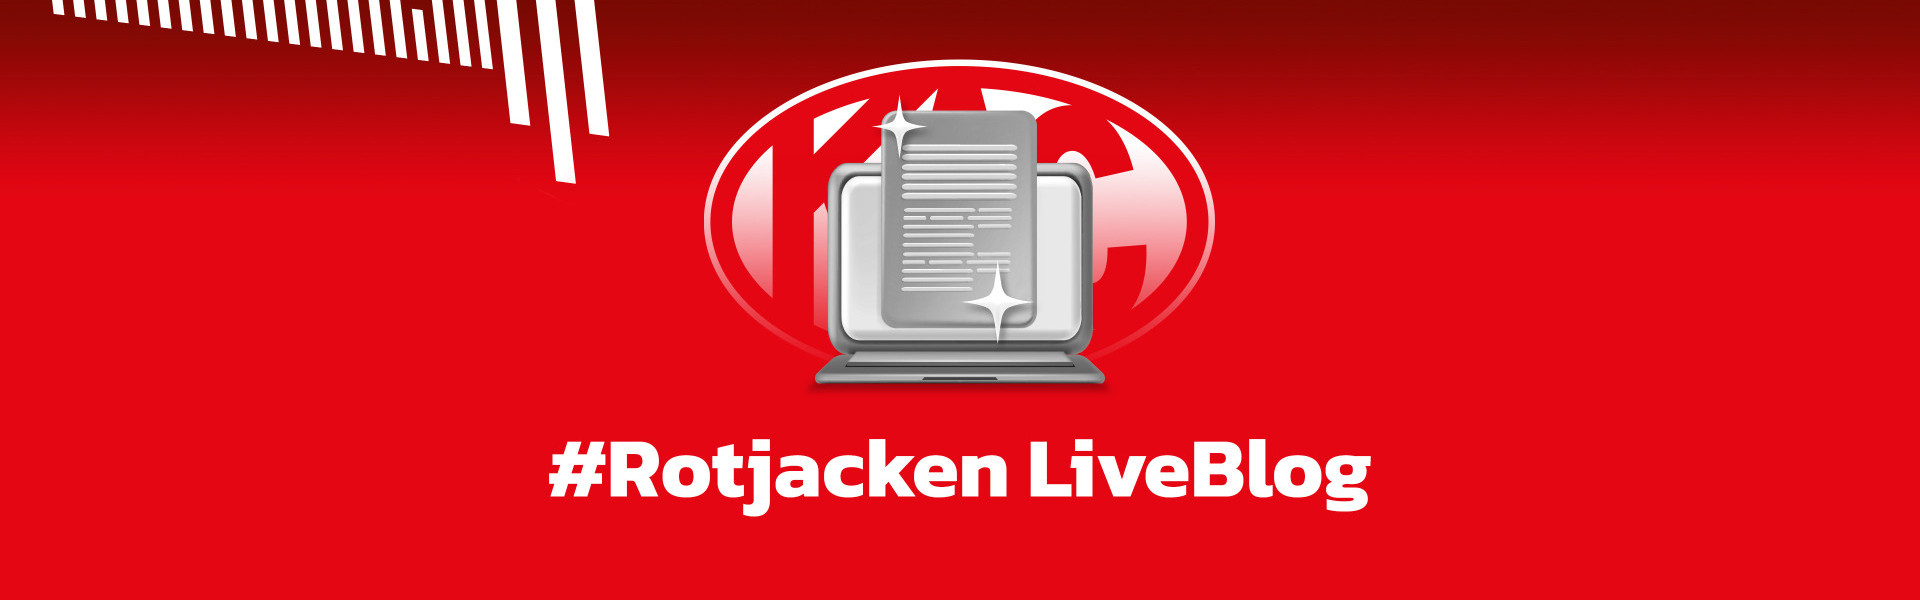 #Rotjacken LiveBlog